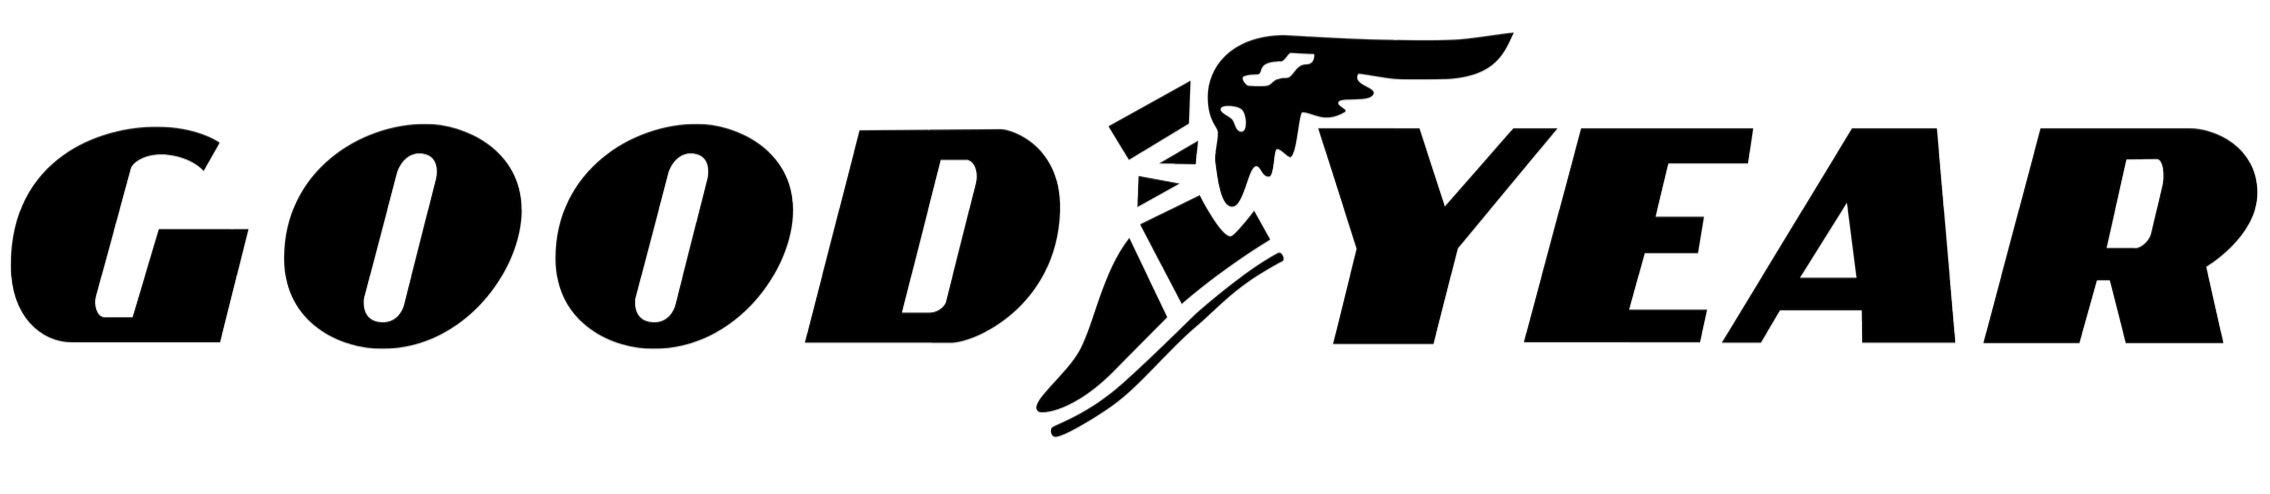 Goodyear-logo-black-5500x1200.jpg